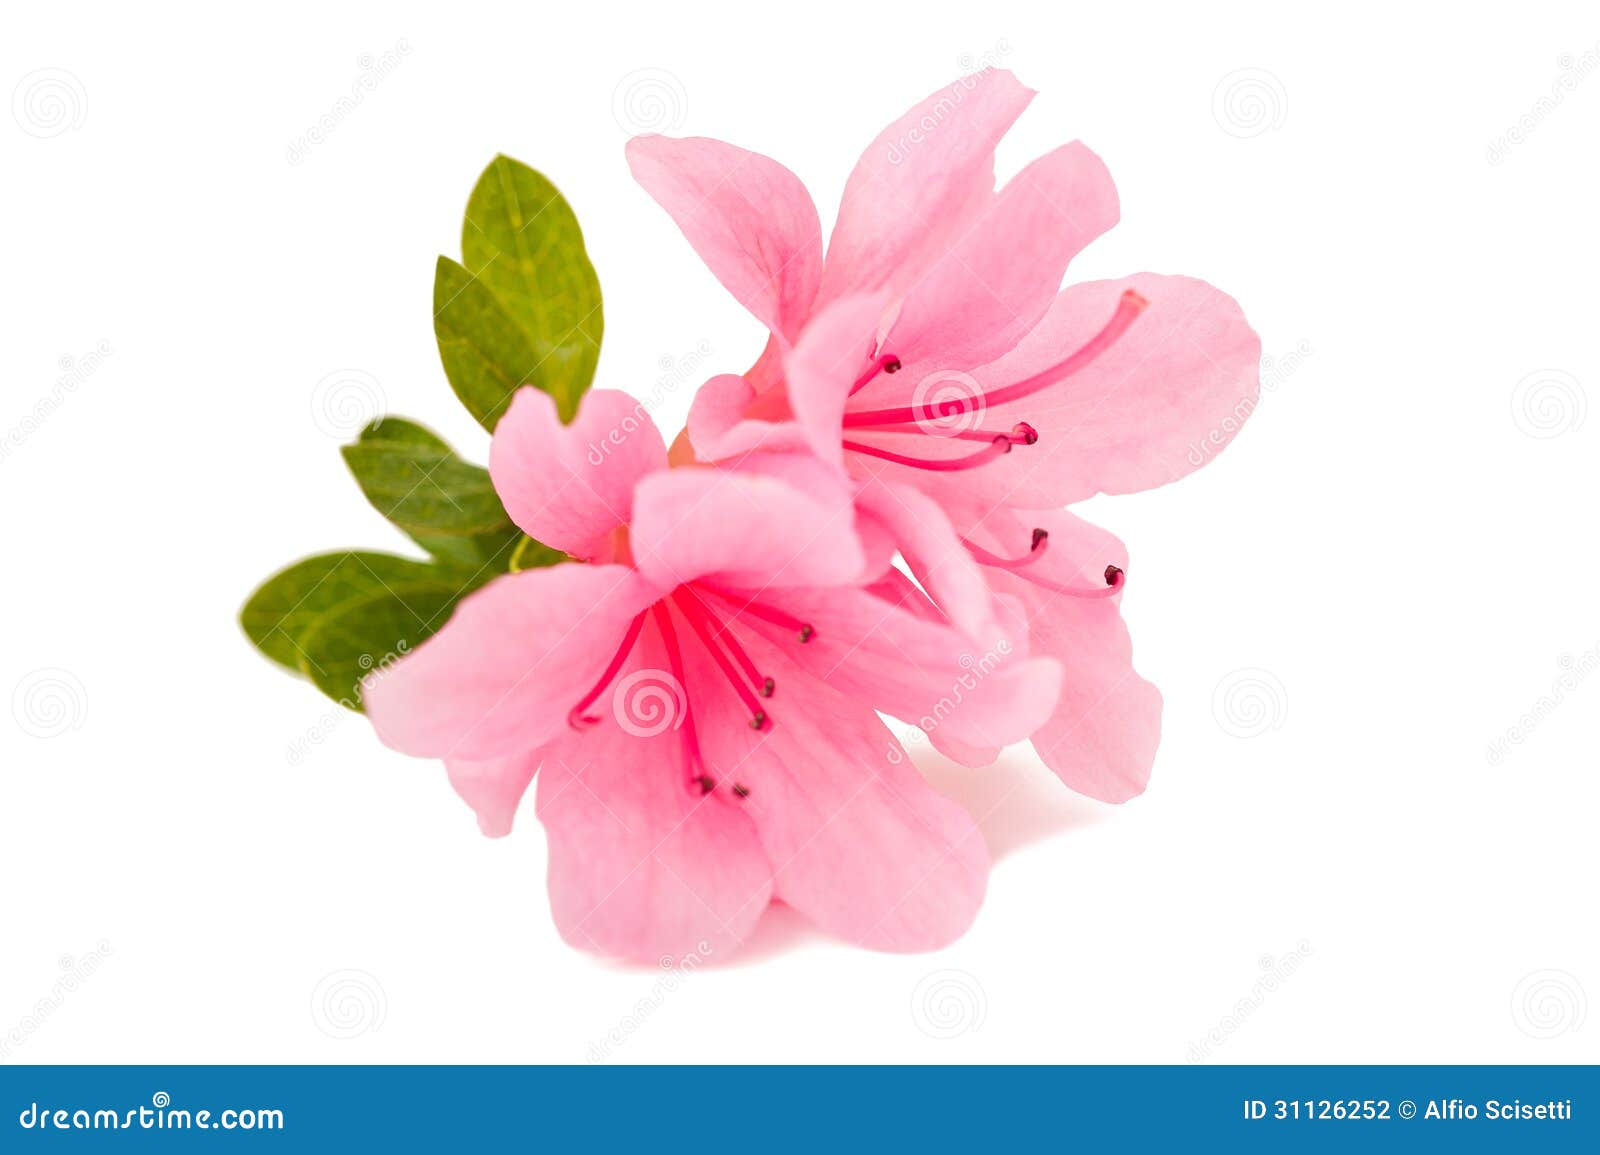 azalea flower